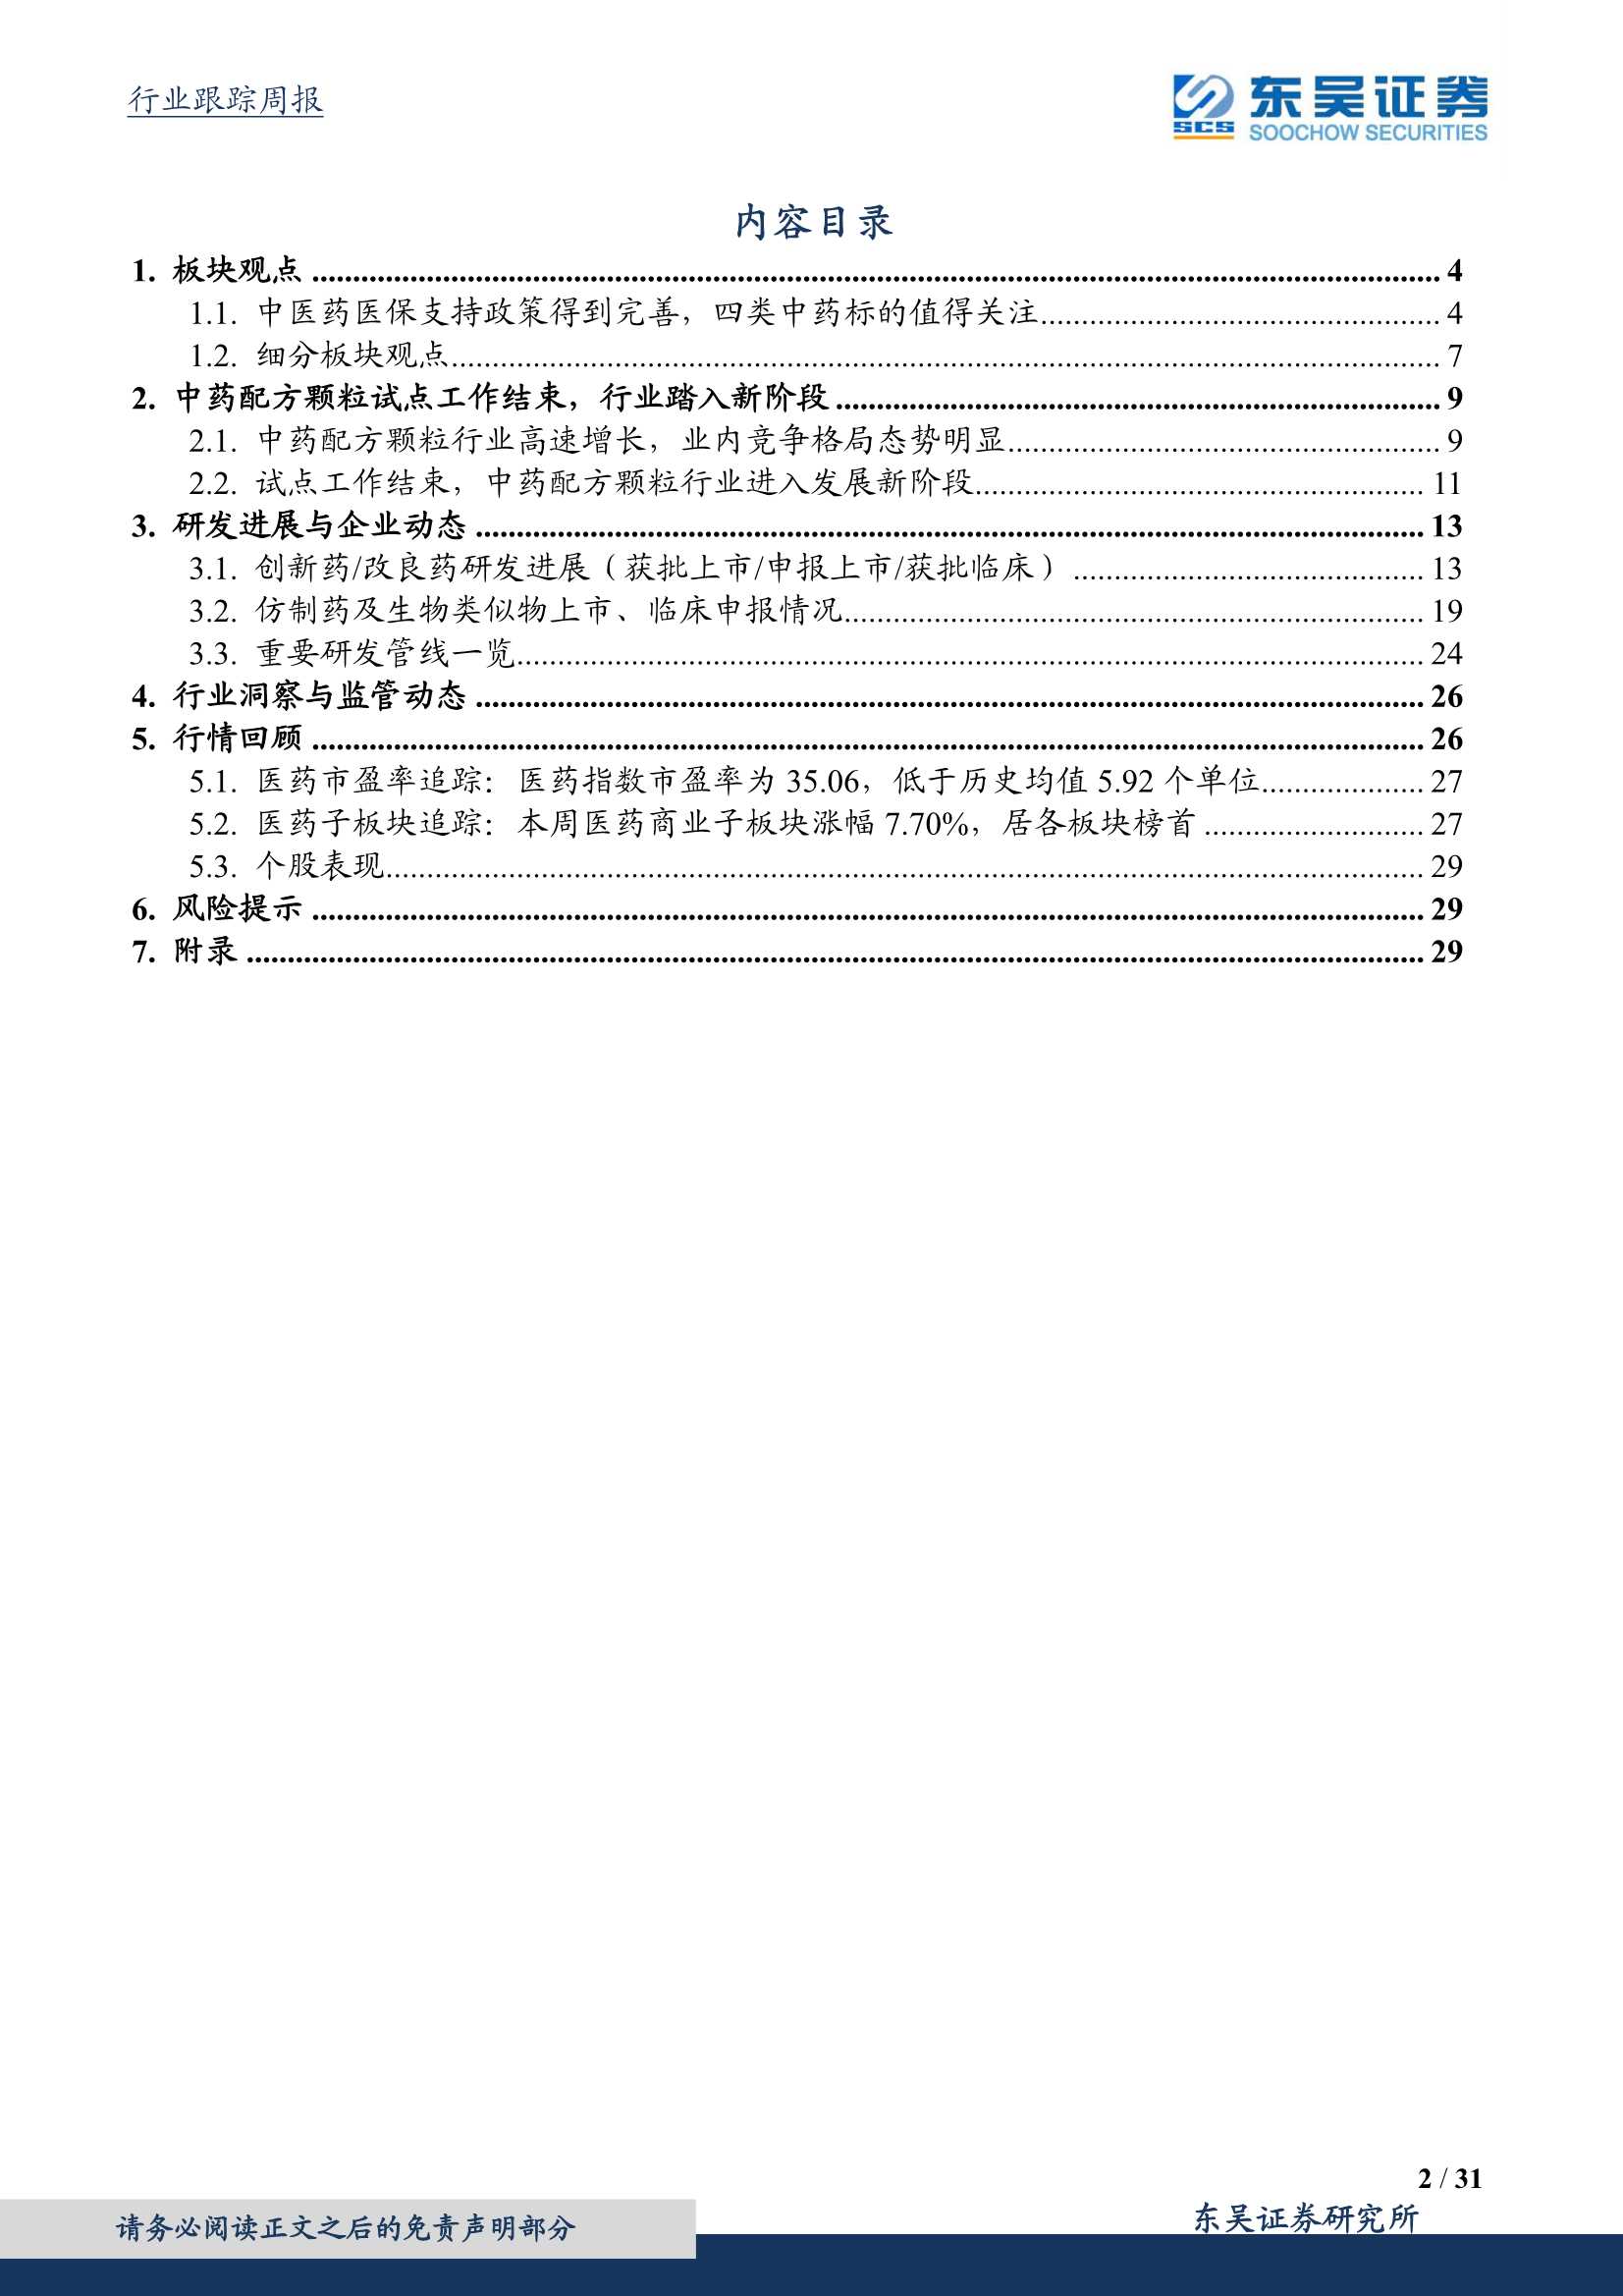 东吴证券-医药生物行业：医保局表态，中药板块中期趋势确认-20220103-31页